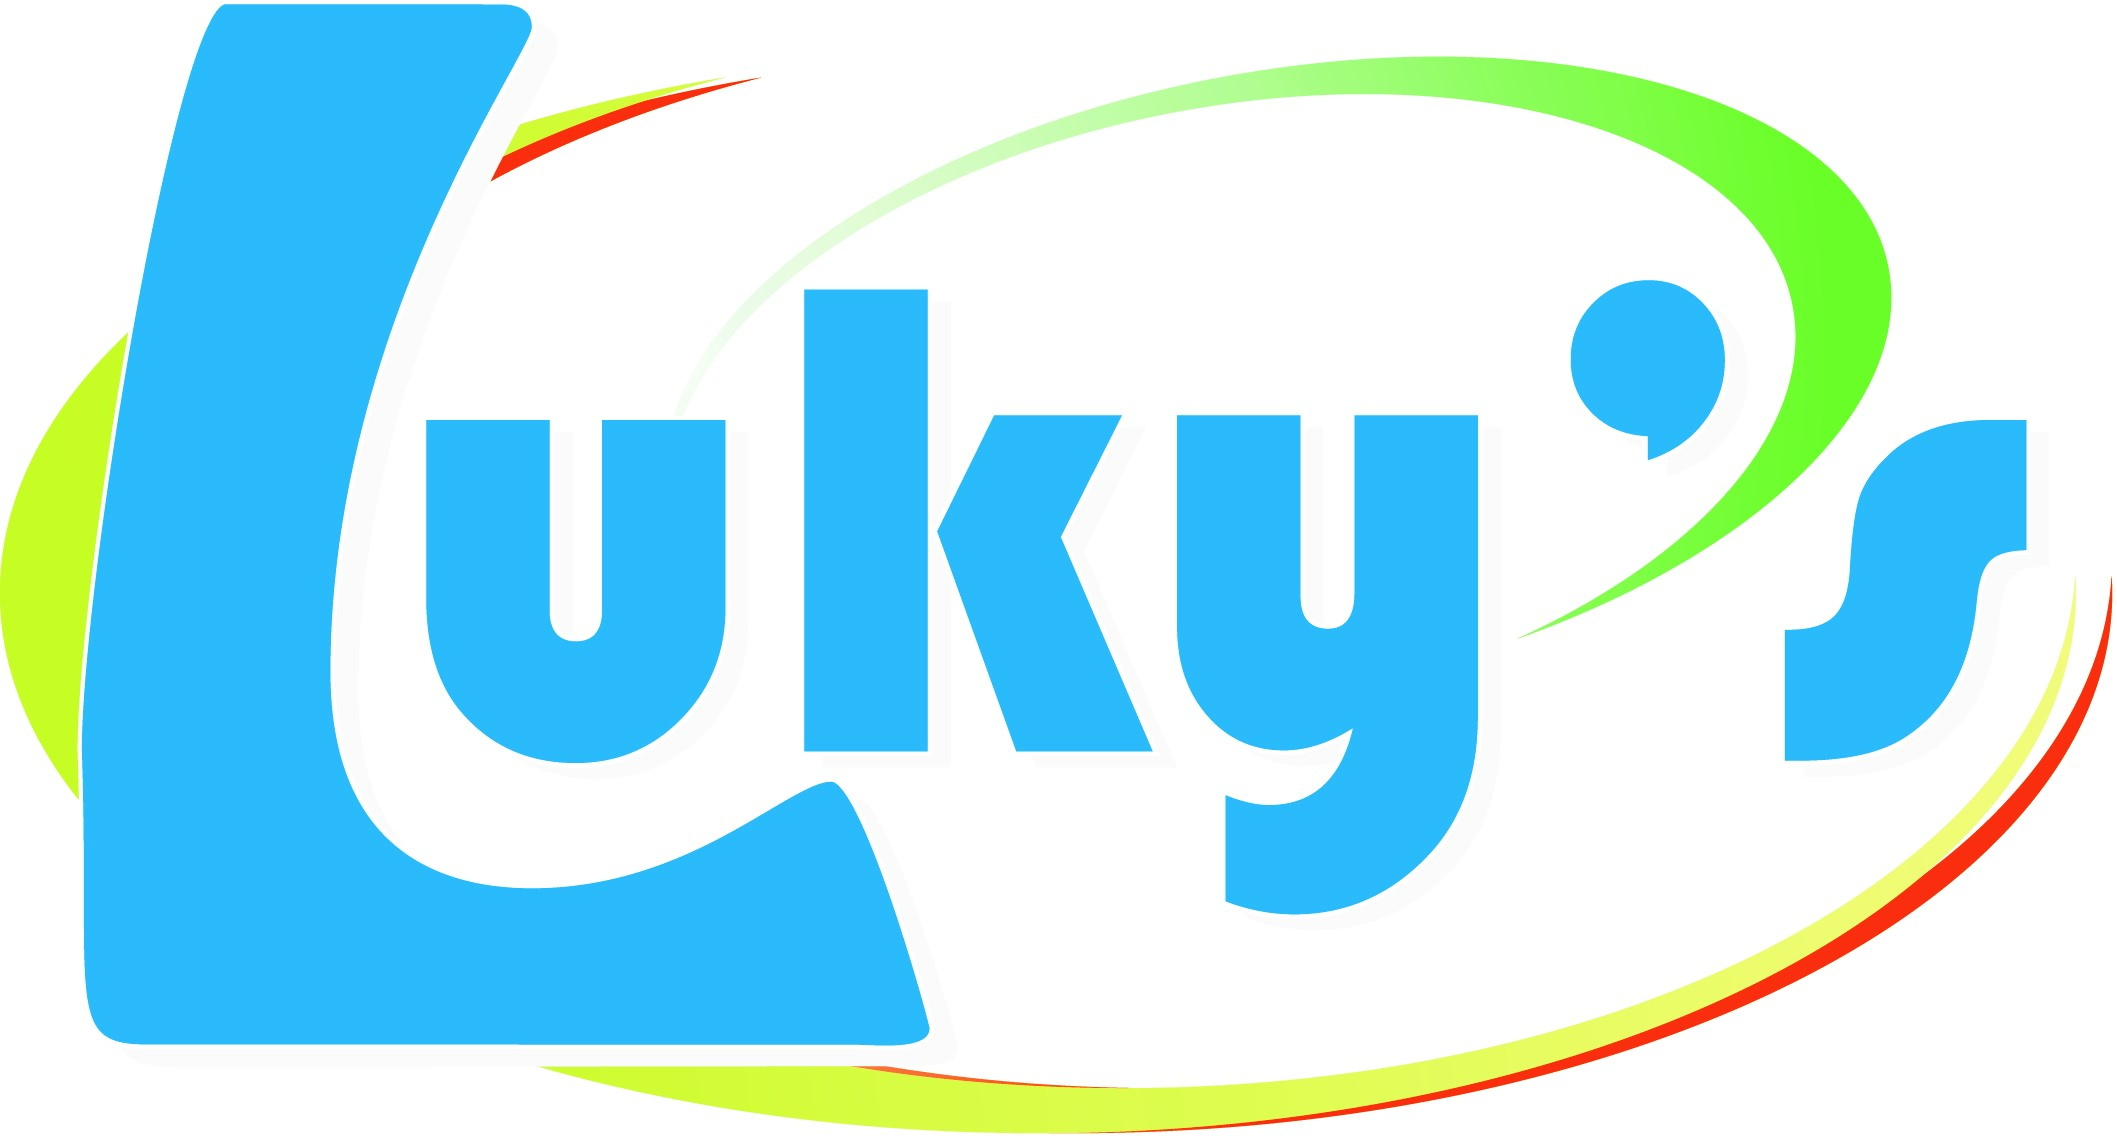 Luky's